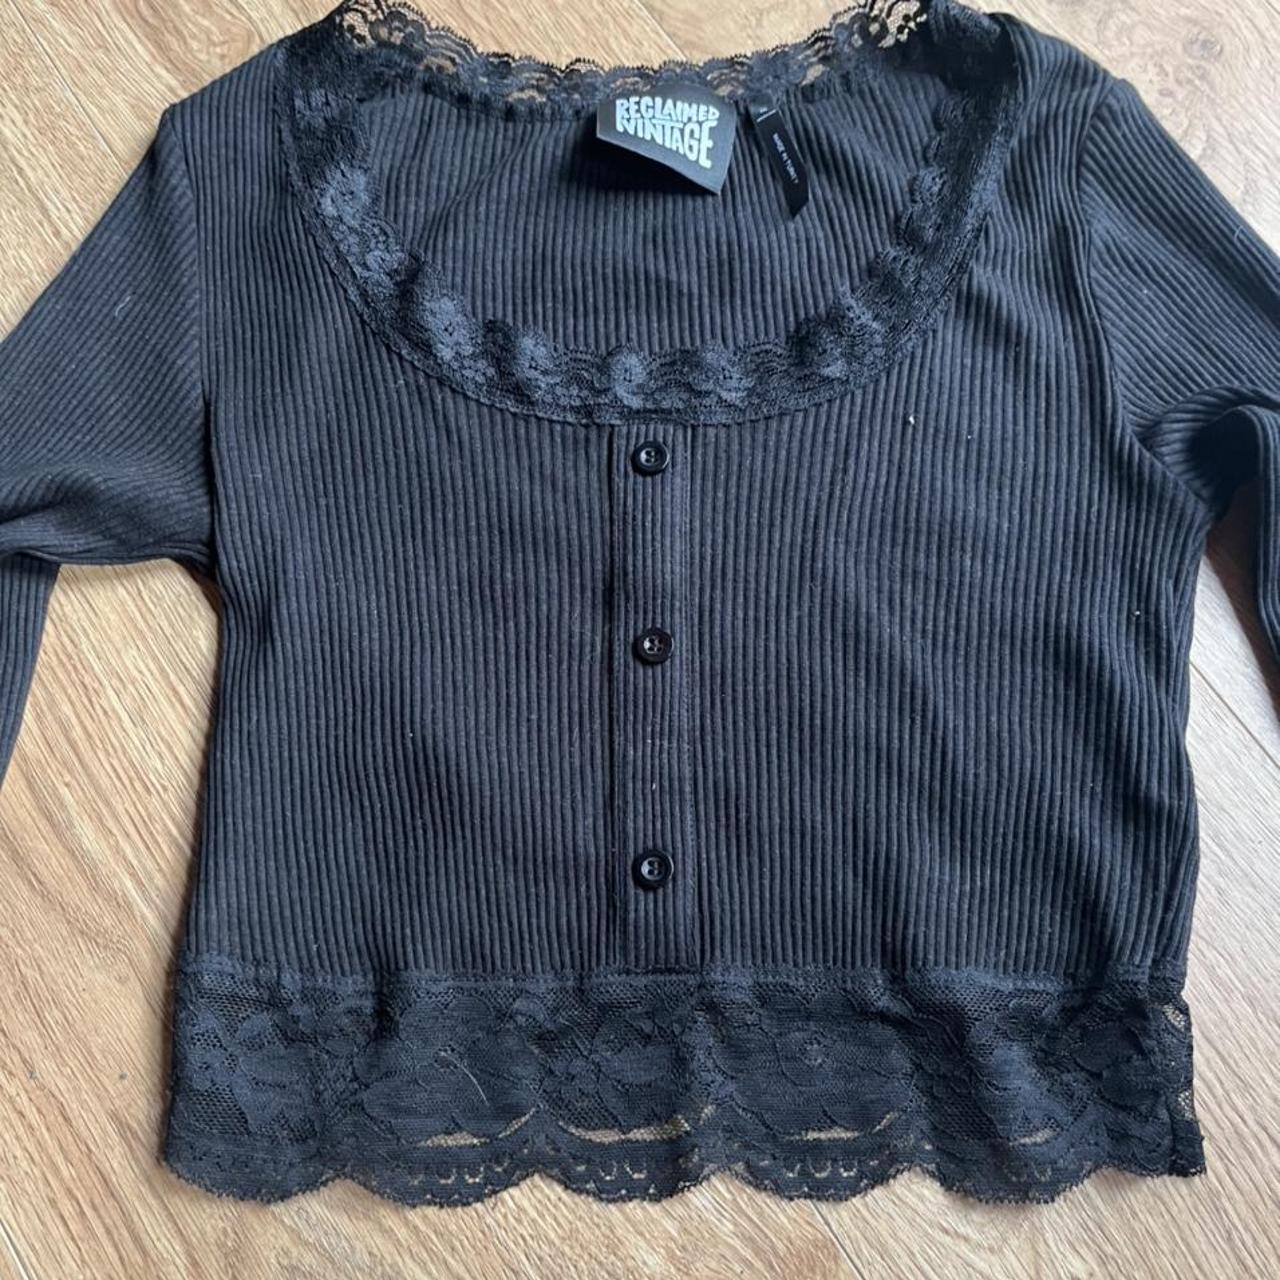 Reclaimed Vintage black, lace, long sleeved crop... - Depop